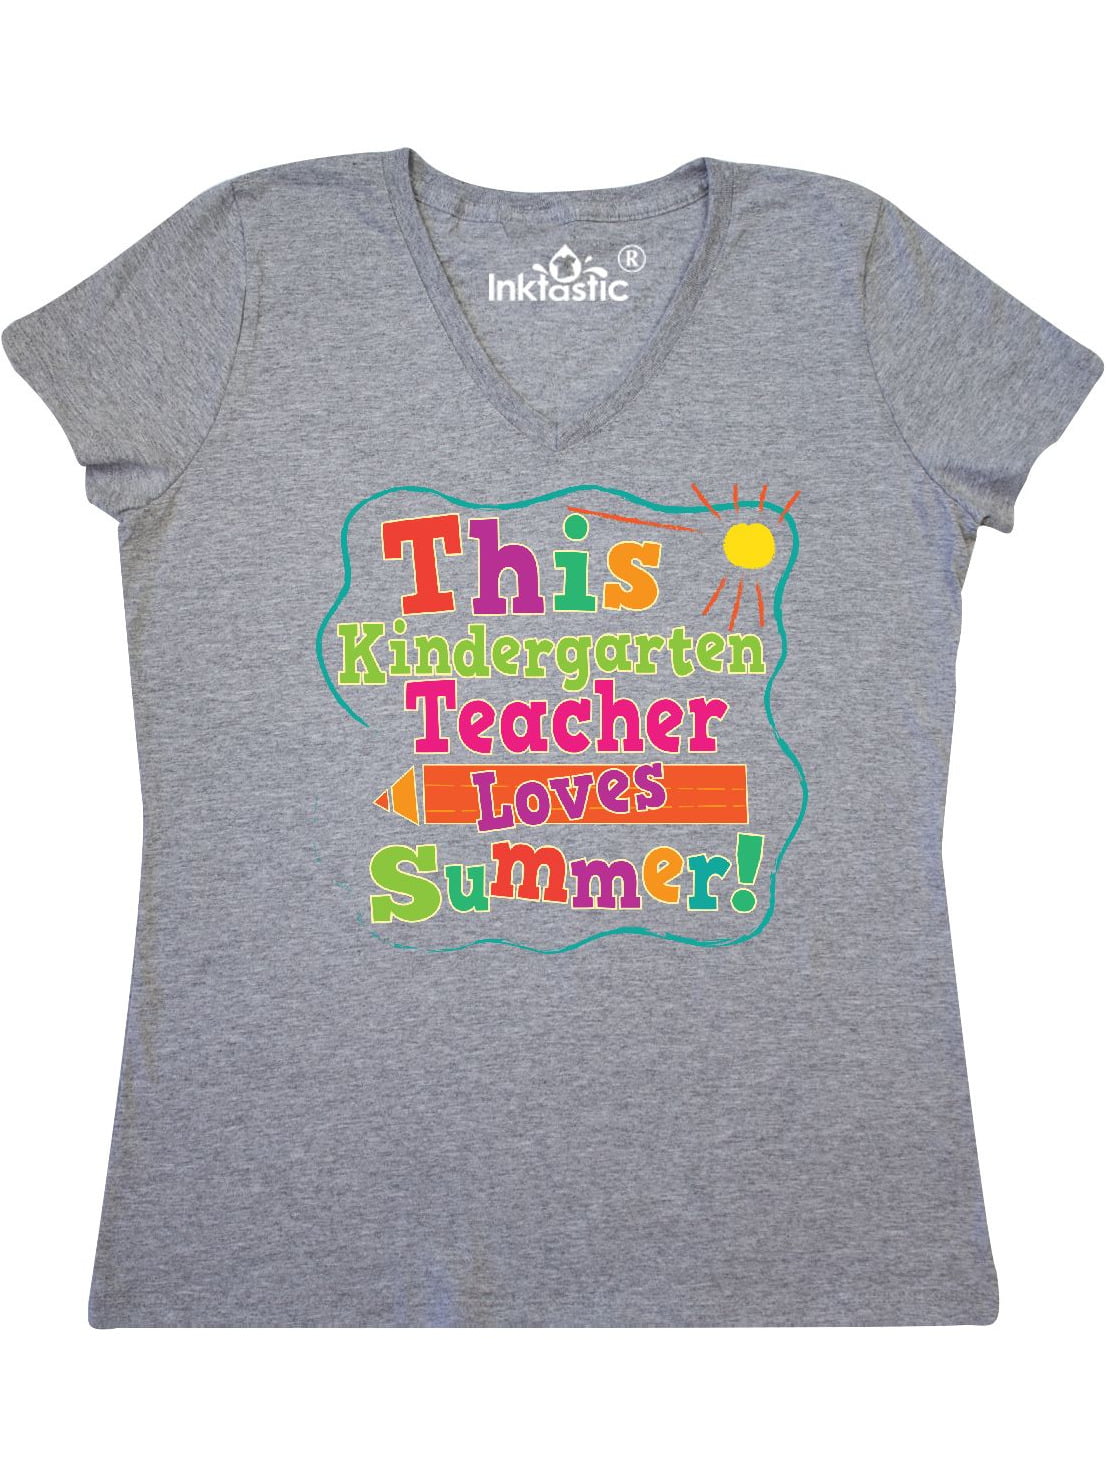 Teacher Shirt,Funny Teachers Shirt,Teacher Gift,Gift for Teachers,Kindergarten Teacher,Teacher Appreciation,Teacher Birthday Unisex T-Shirt